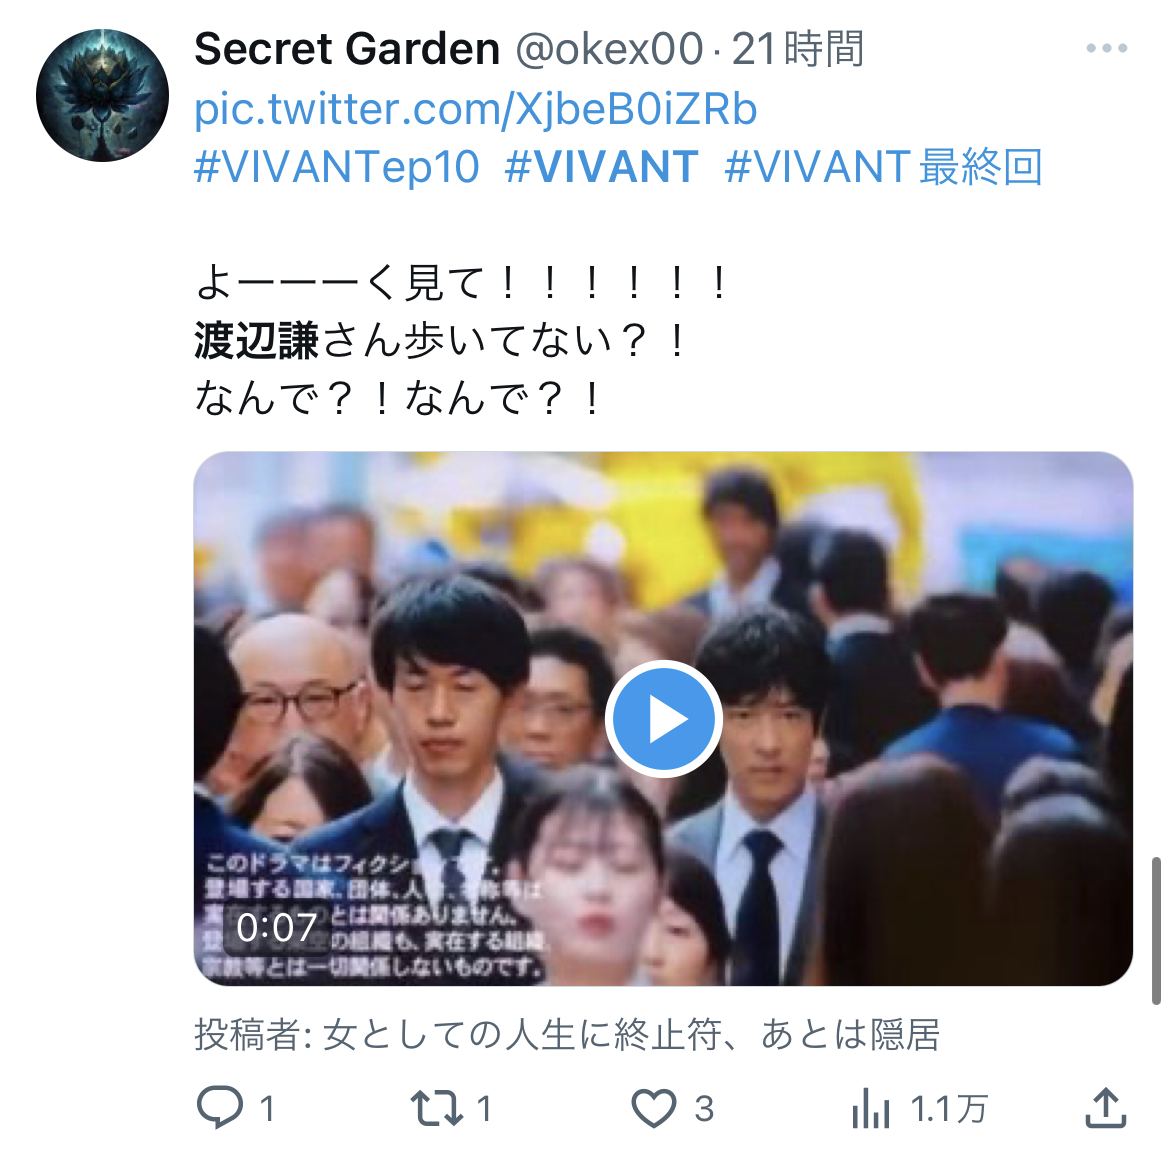 【速報】VIVANT、最終回に渡辺謙が出演していた　気付いた視聴者たち興奮「続編のメインキャストか？」